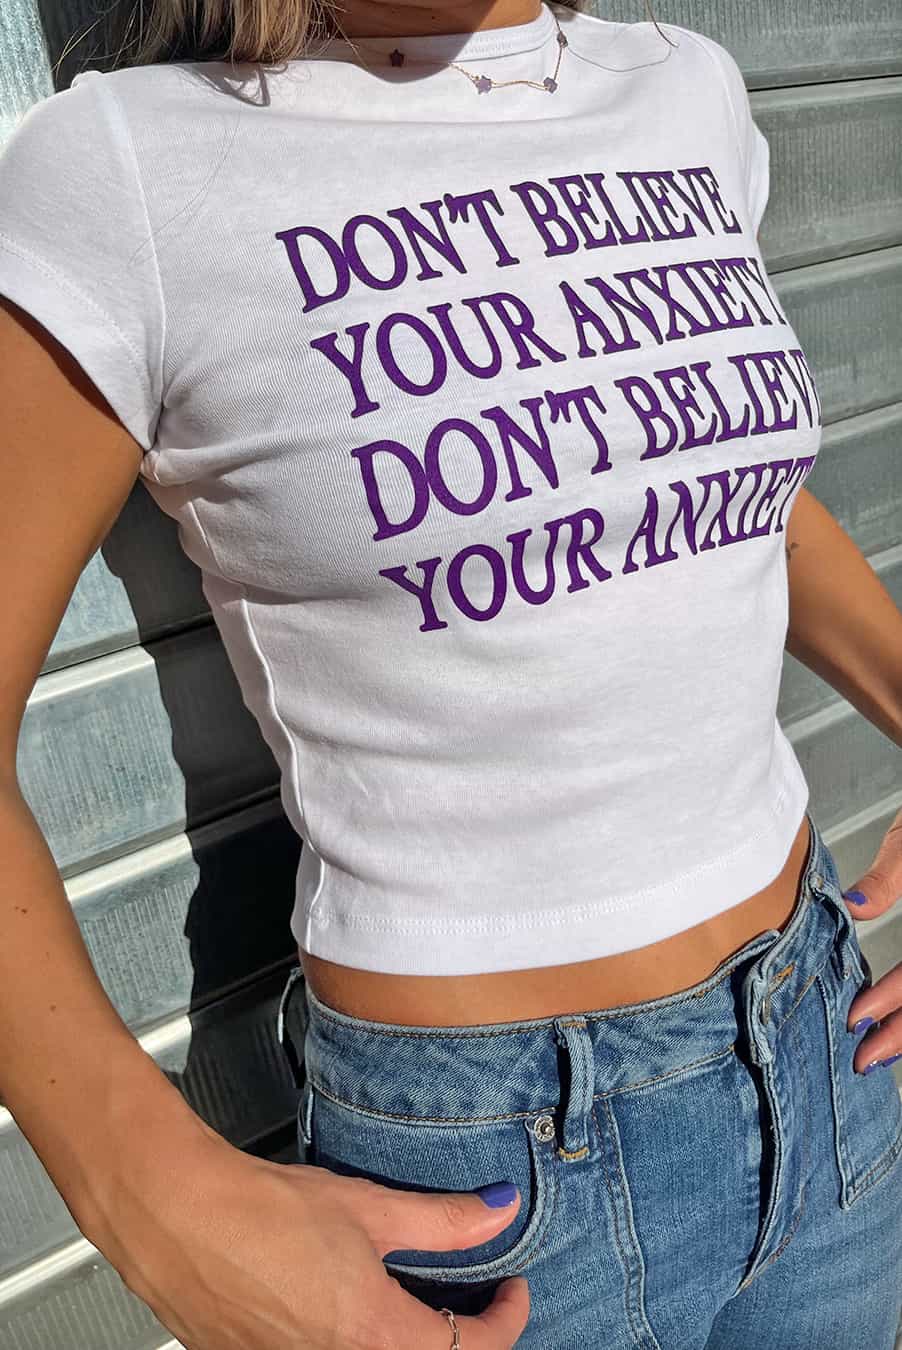 Camiseta Don't believe